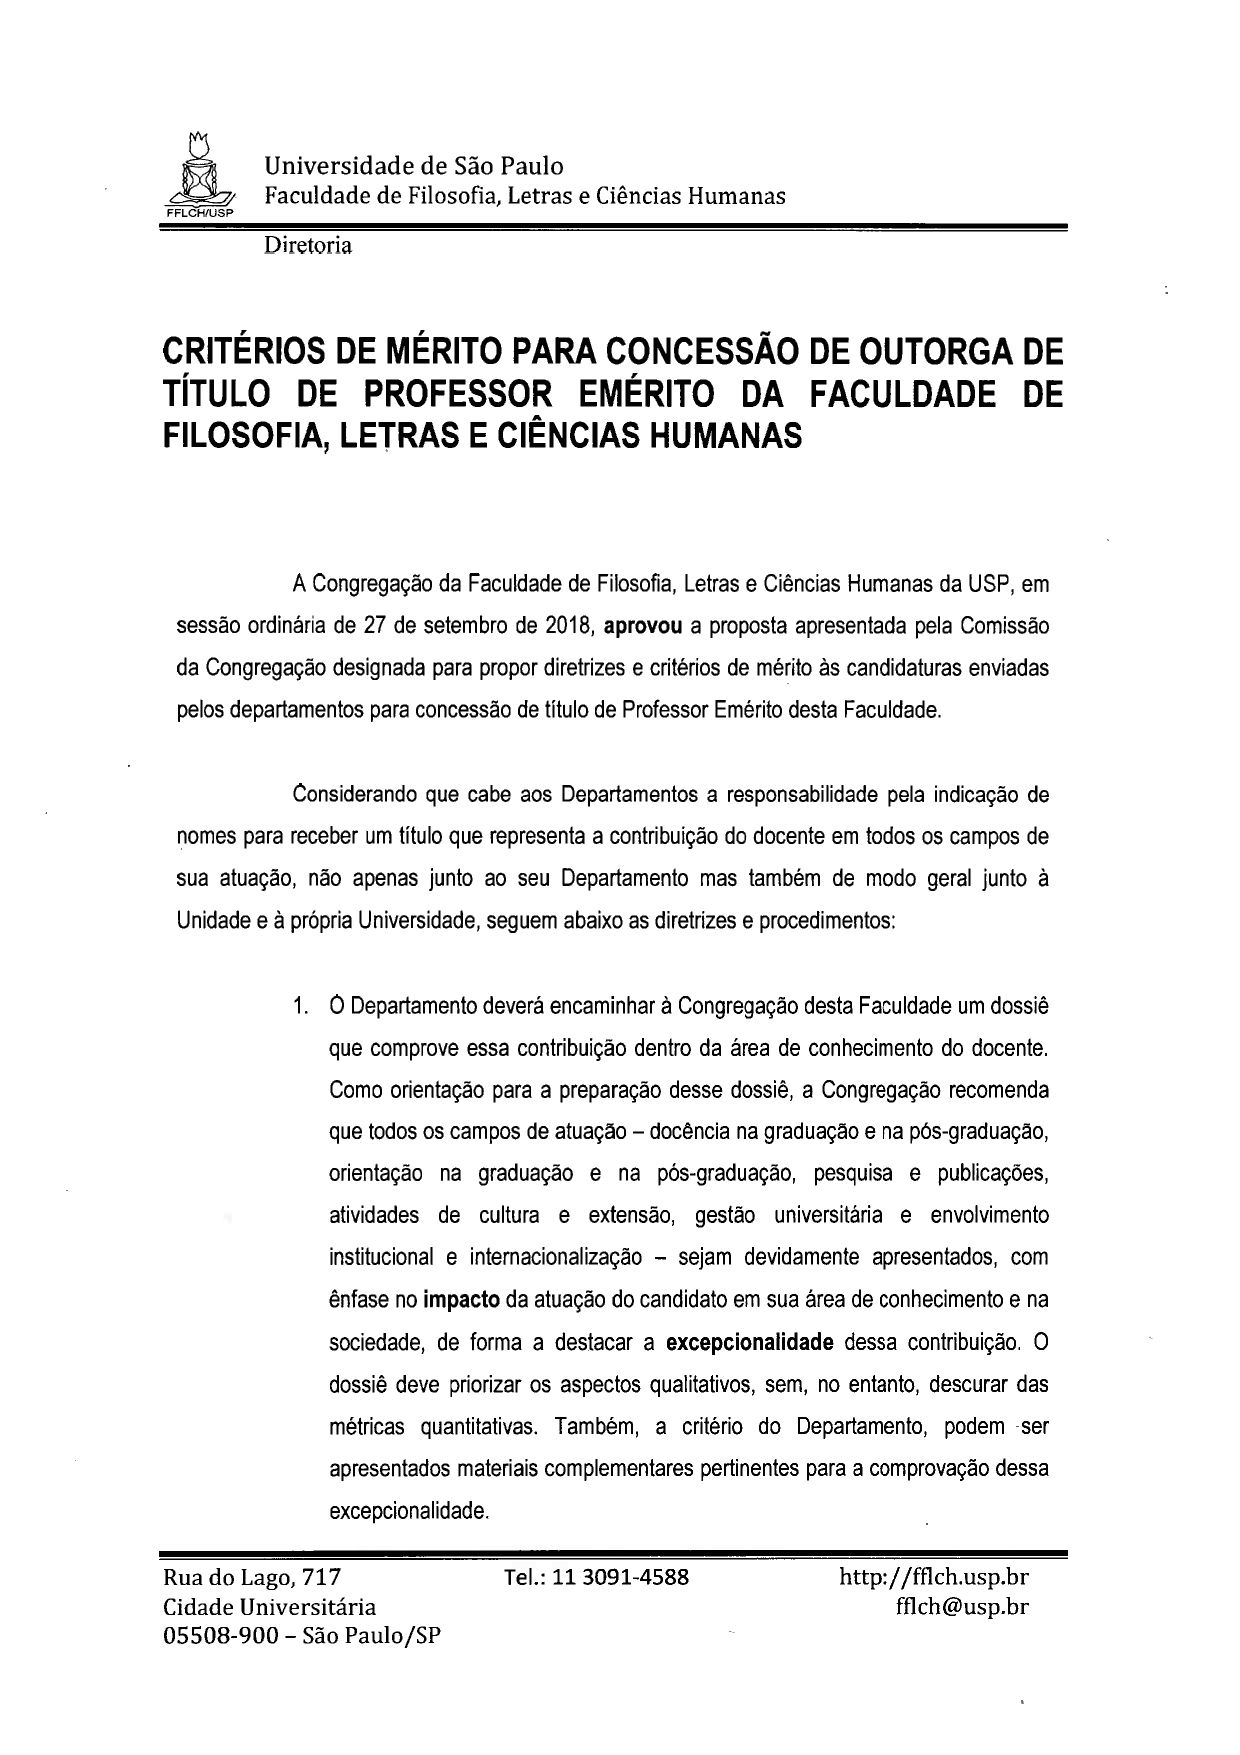 CRITÉRIOS DE MÉRITO PARA OUTORGA DO TÍTULO DE PROF EMÉRITO page-0001 0